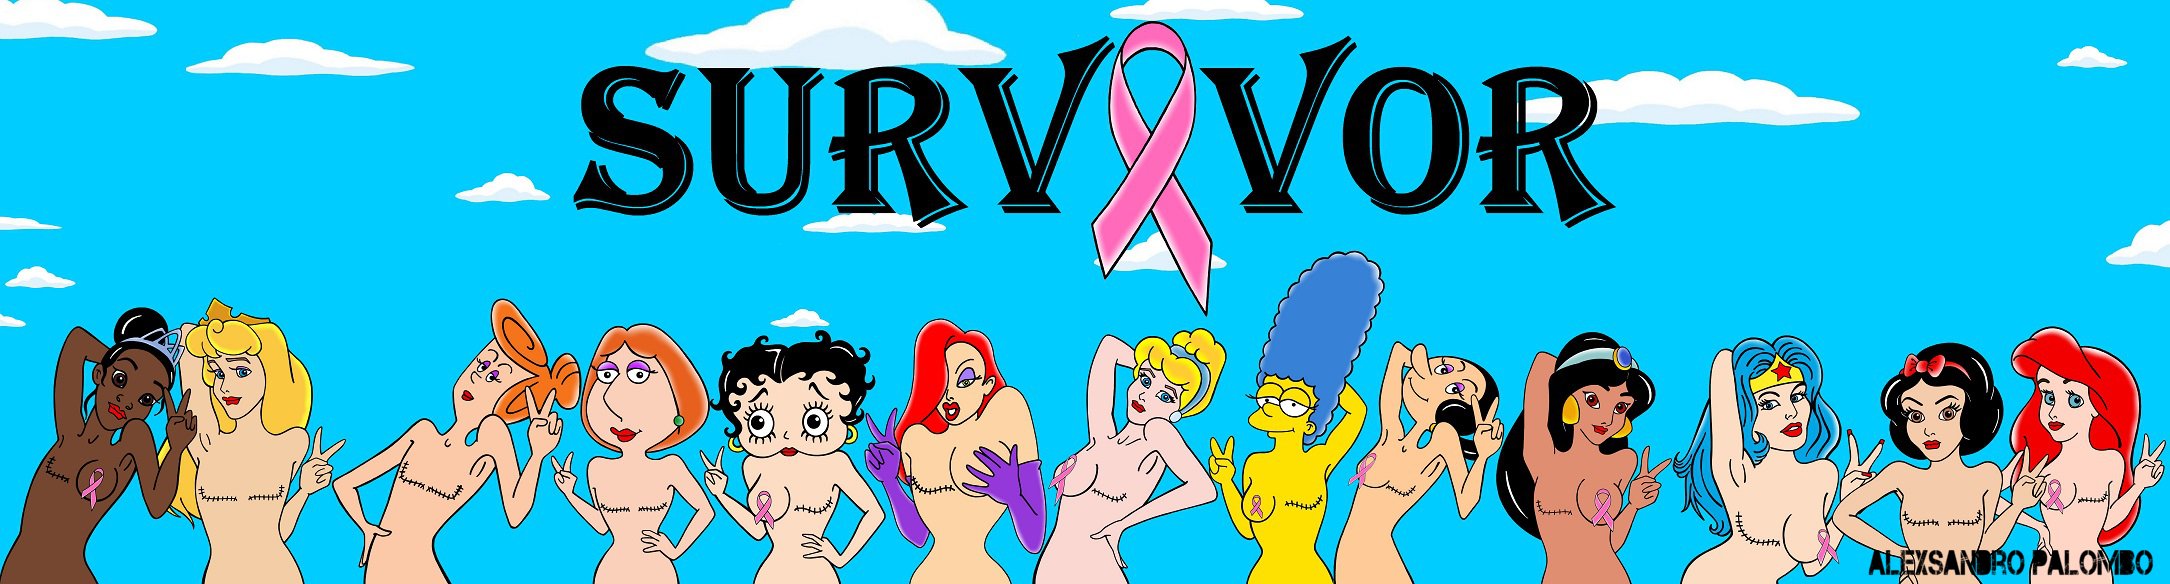 Breast cancer survivors by Alexsandro Palombo  | Source: Alexsandro Palombo 